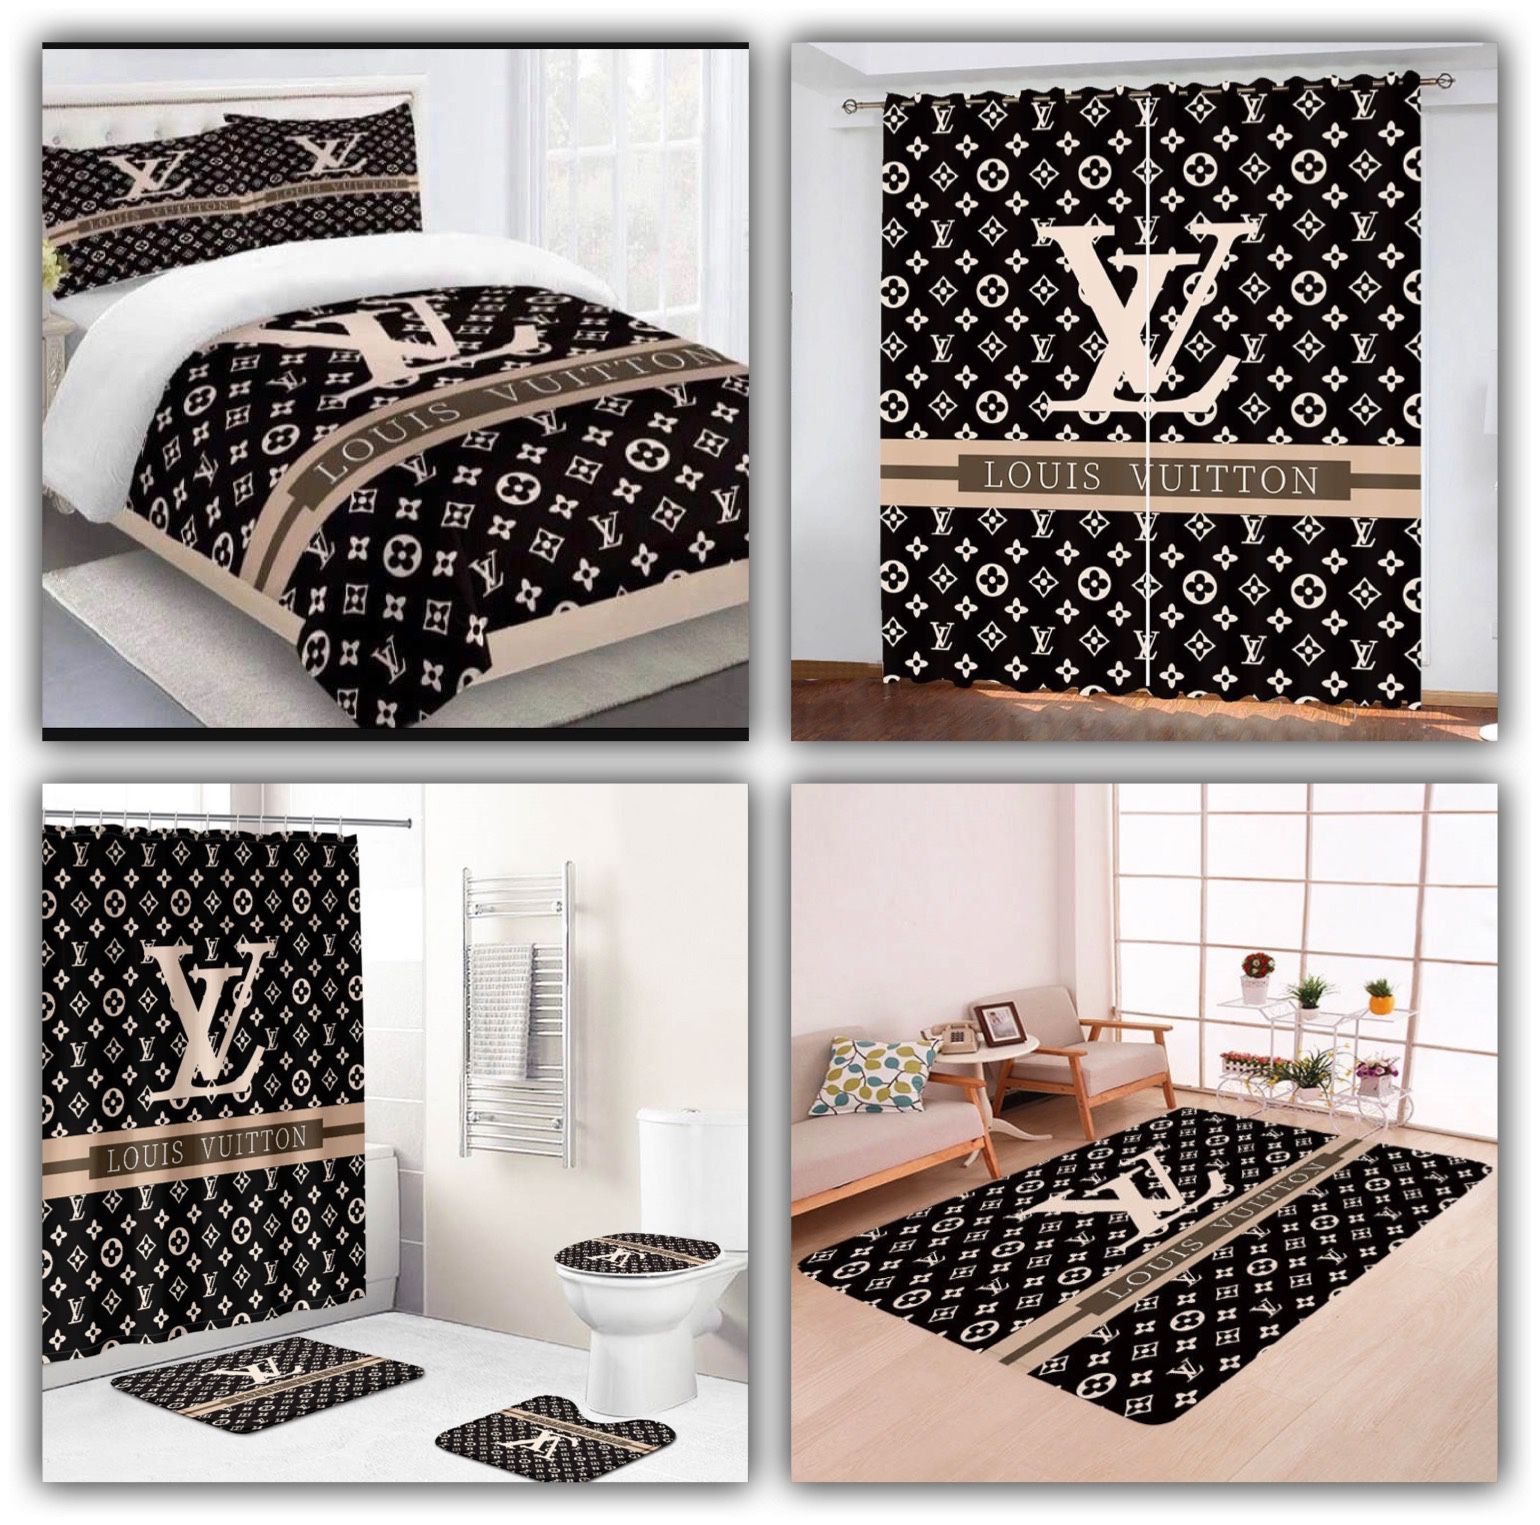 Louis Vuitton 12 3d Personalized Customized Bedding Sets Duvet